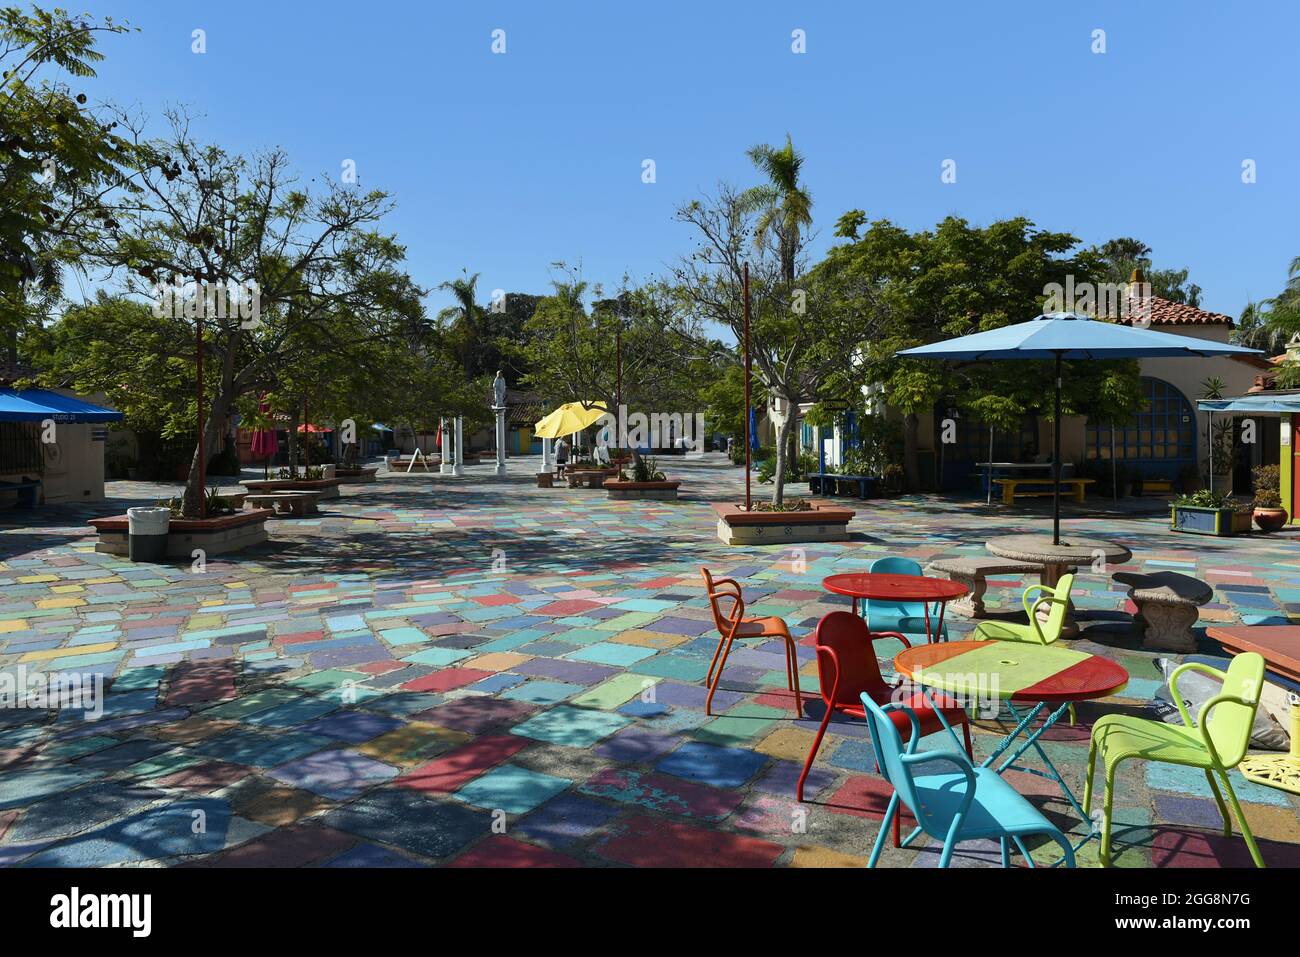 SAN DIEGO , KALIFORNIEN - 25 AUG 2021: Der farbenfrohe Innenhof im Spanish Village Art Center, Balboa Park. Stockfoto